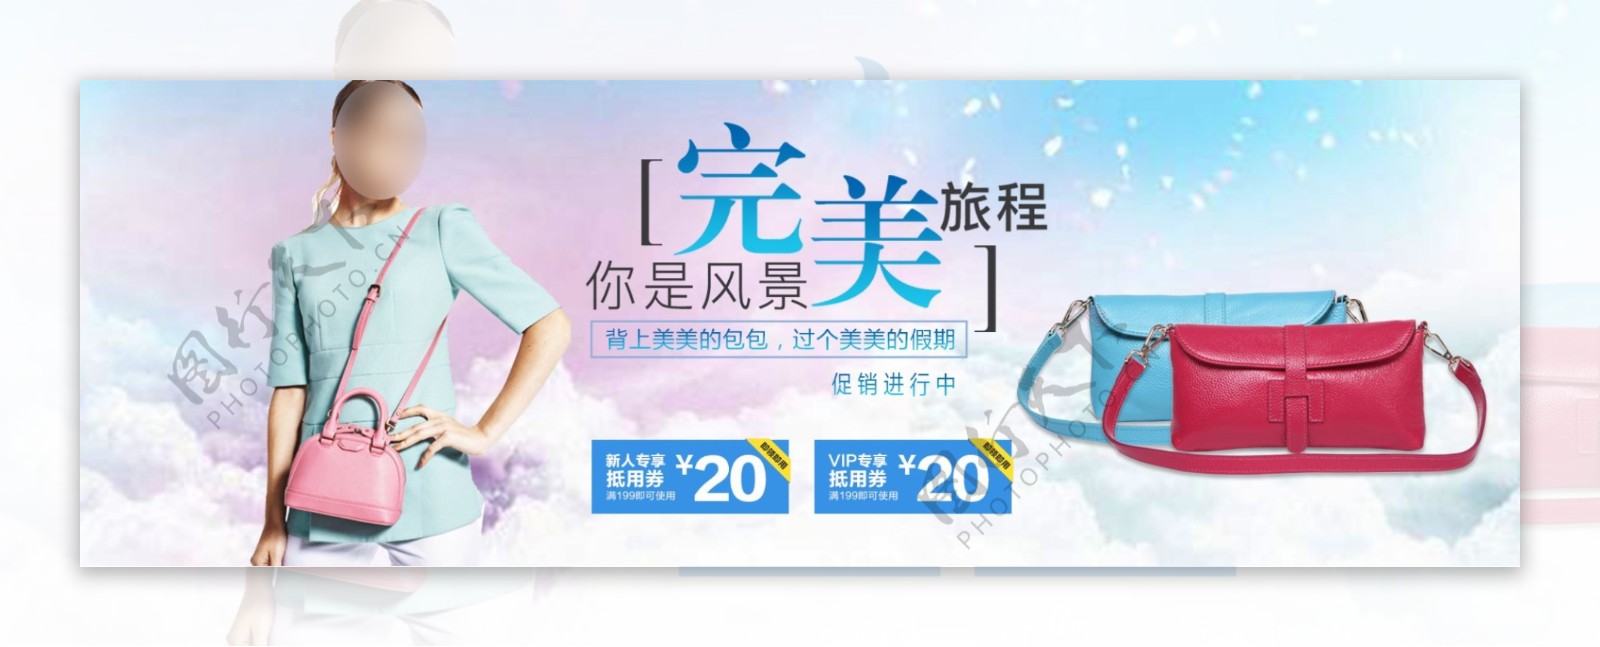 梦幻小清新完美旅程背上美美的包包促销淘宝电商海报